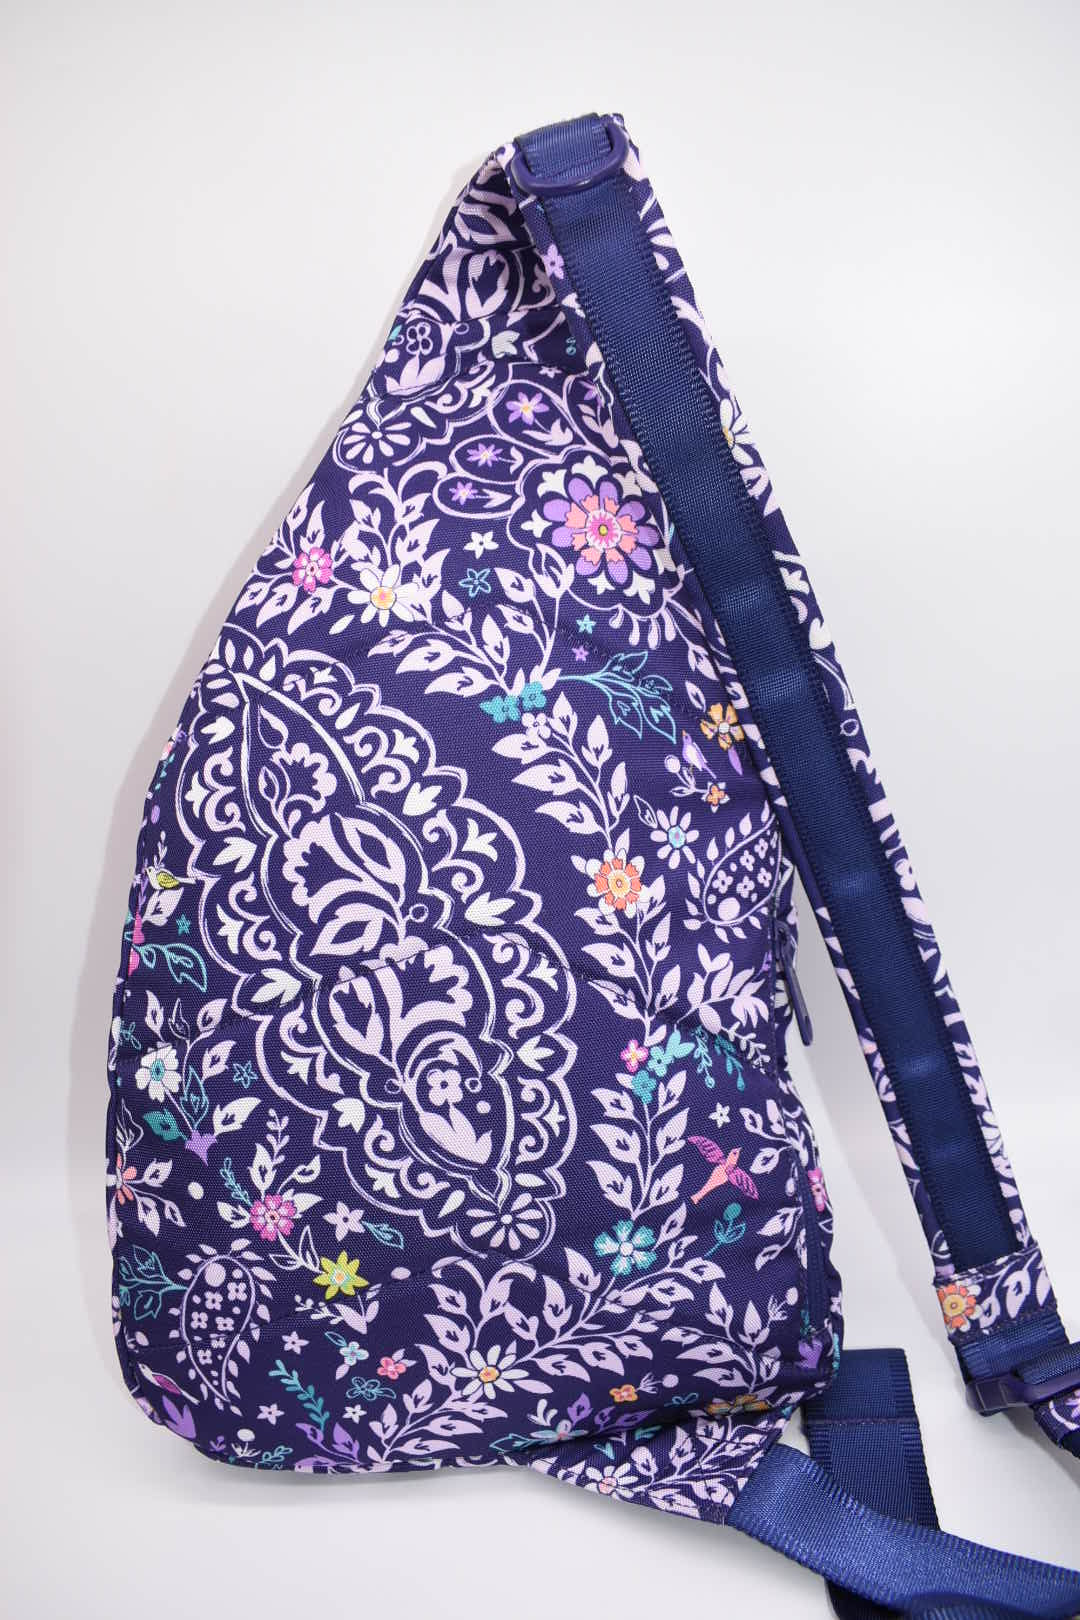 Vera Bradley Reactive Sling Backpack in "Belle Paisley" Pattern